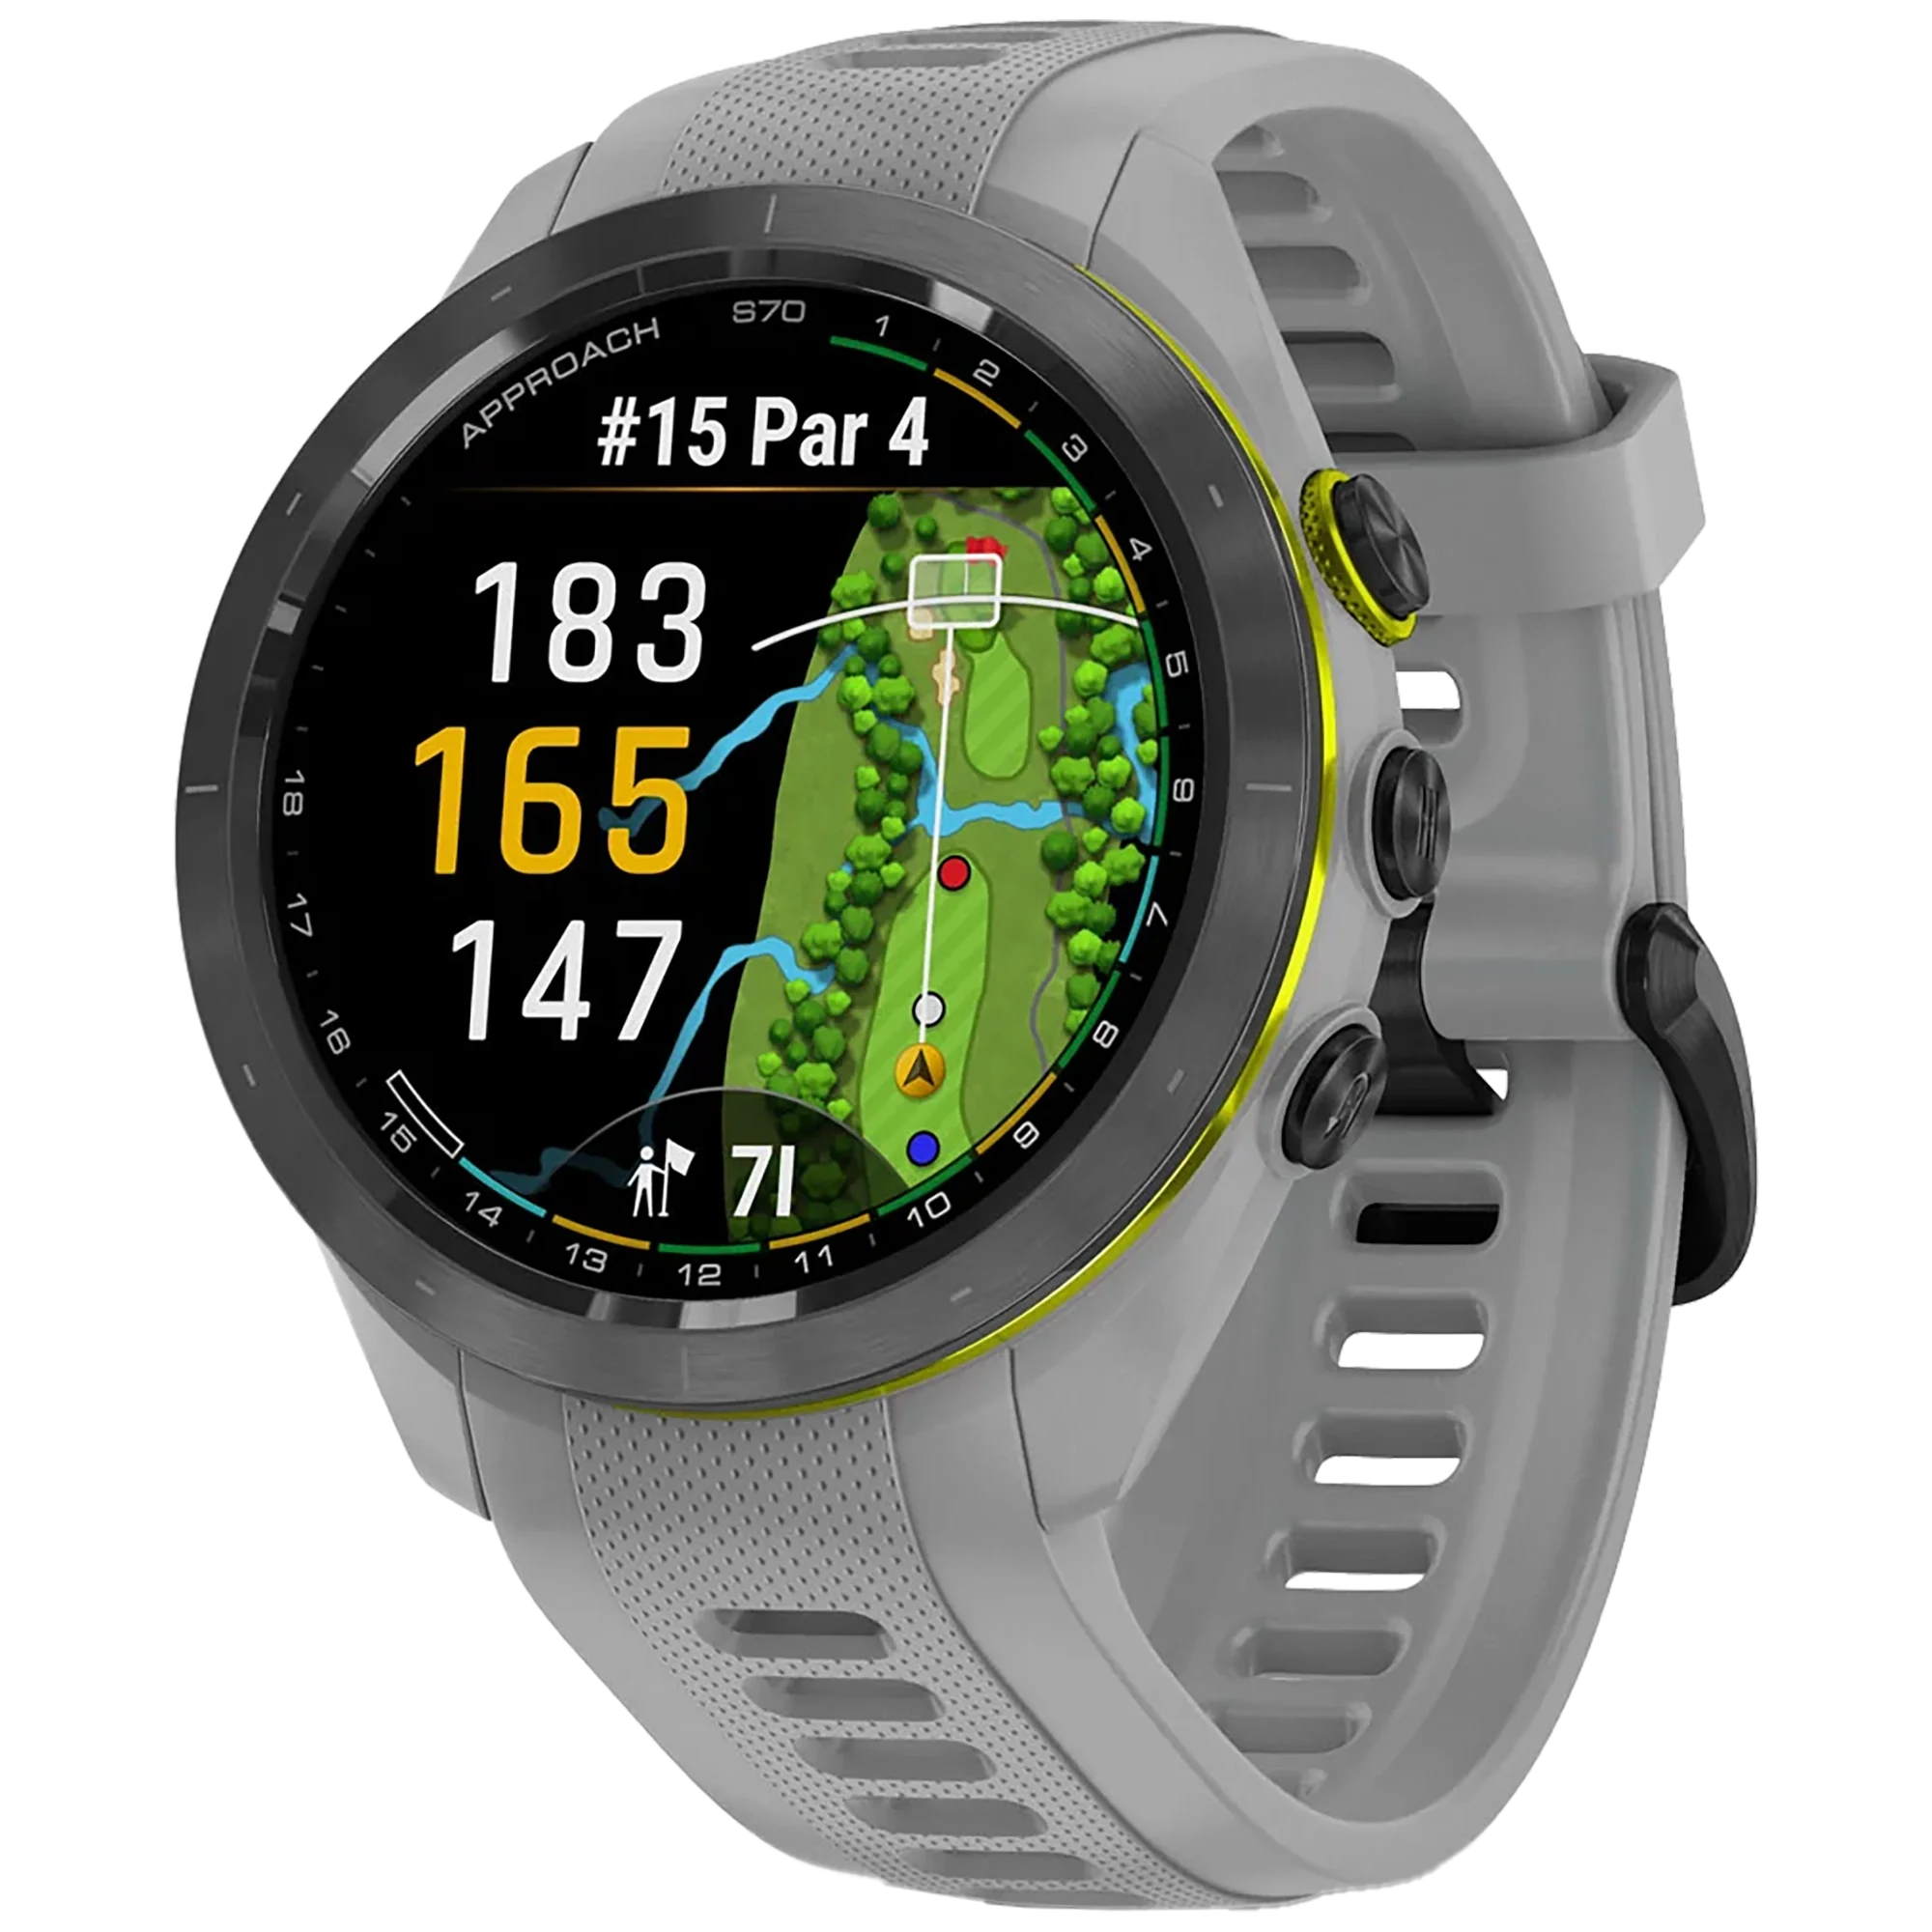 Foto: Smartwatch Garmin Approach S70 (47mm)